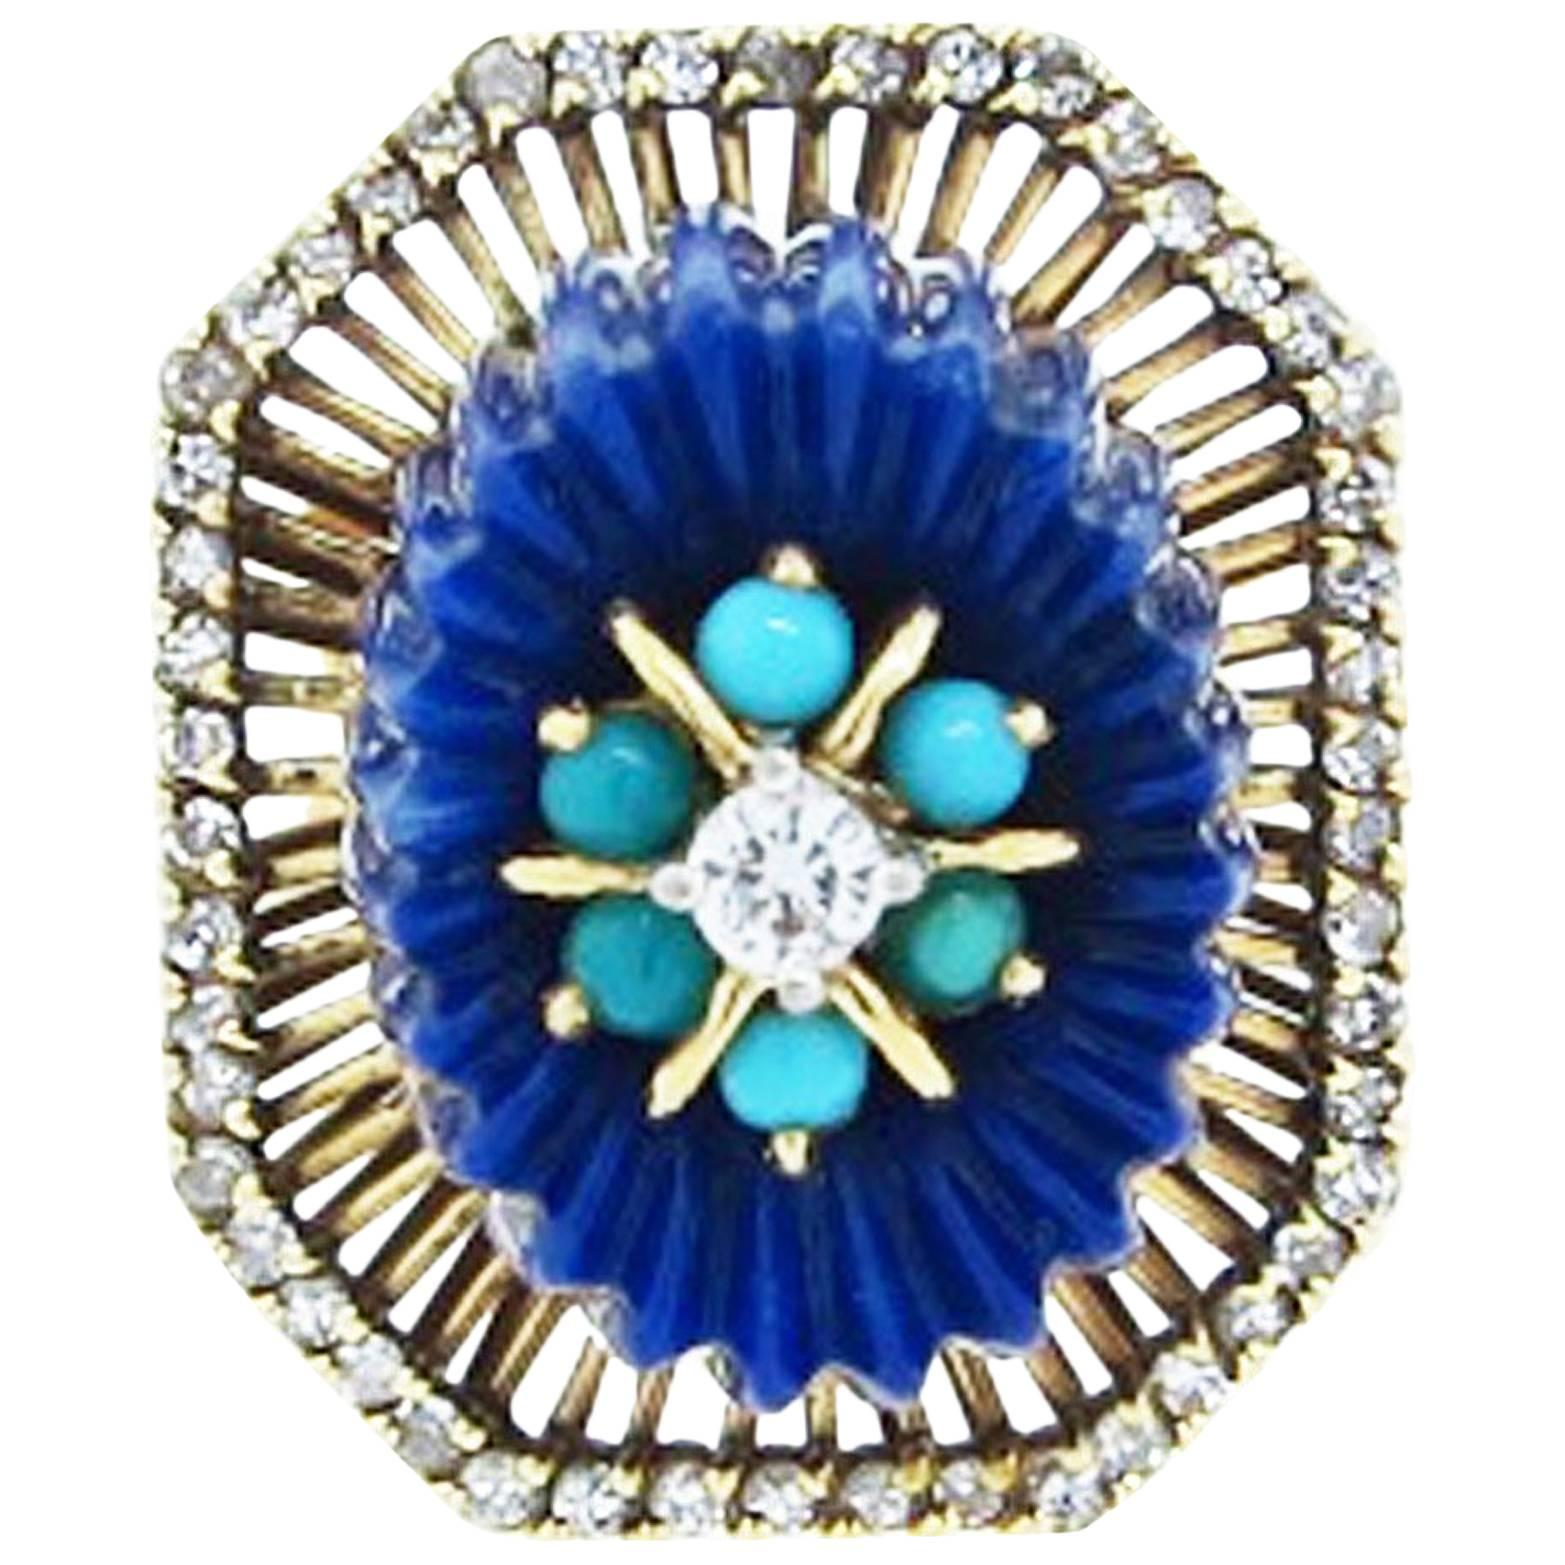 Unique Monumental, 1970s 14 Karat, Lapis Turquoise and Diamond Ring